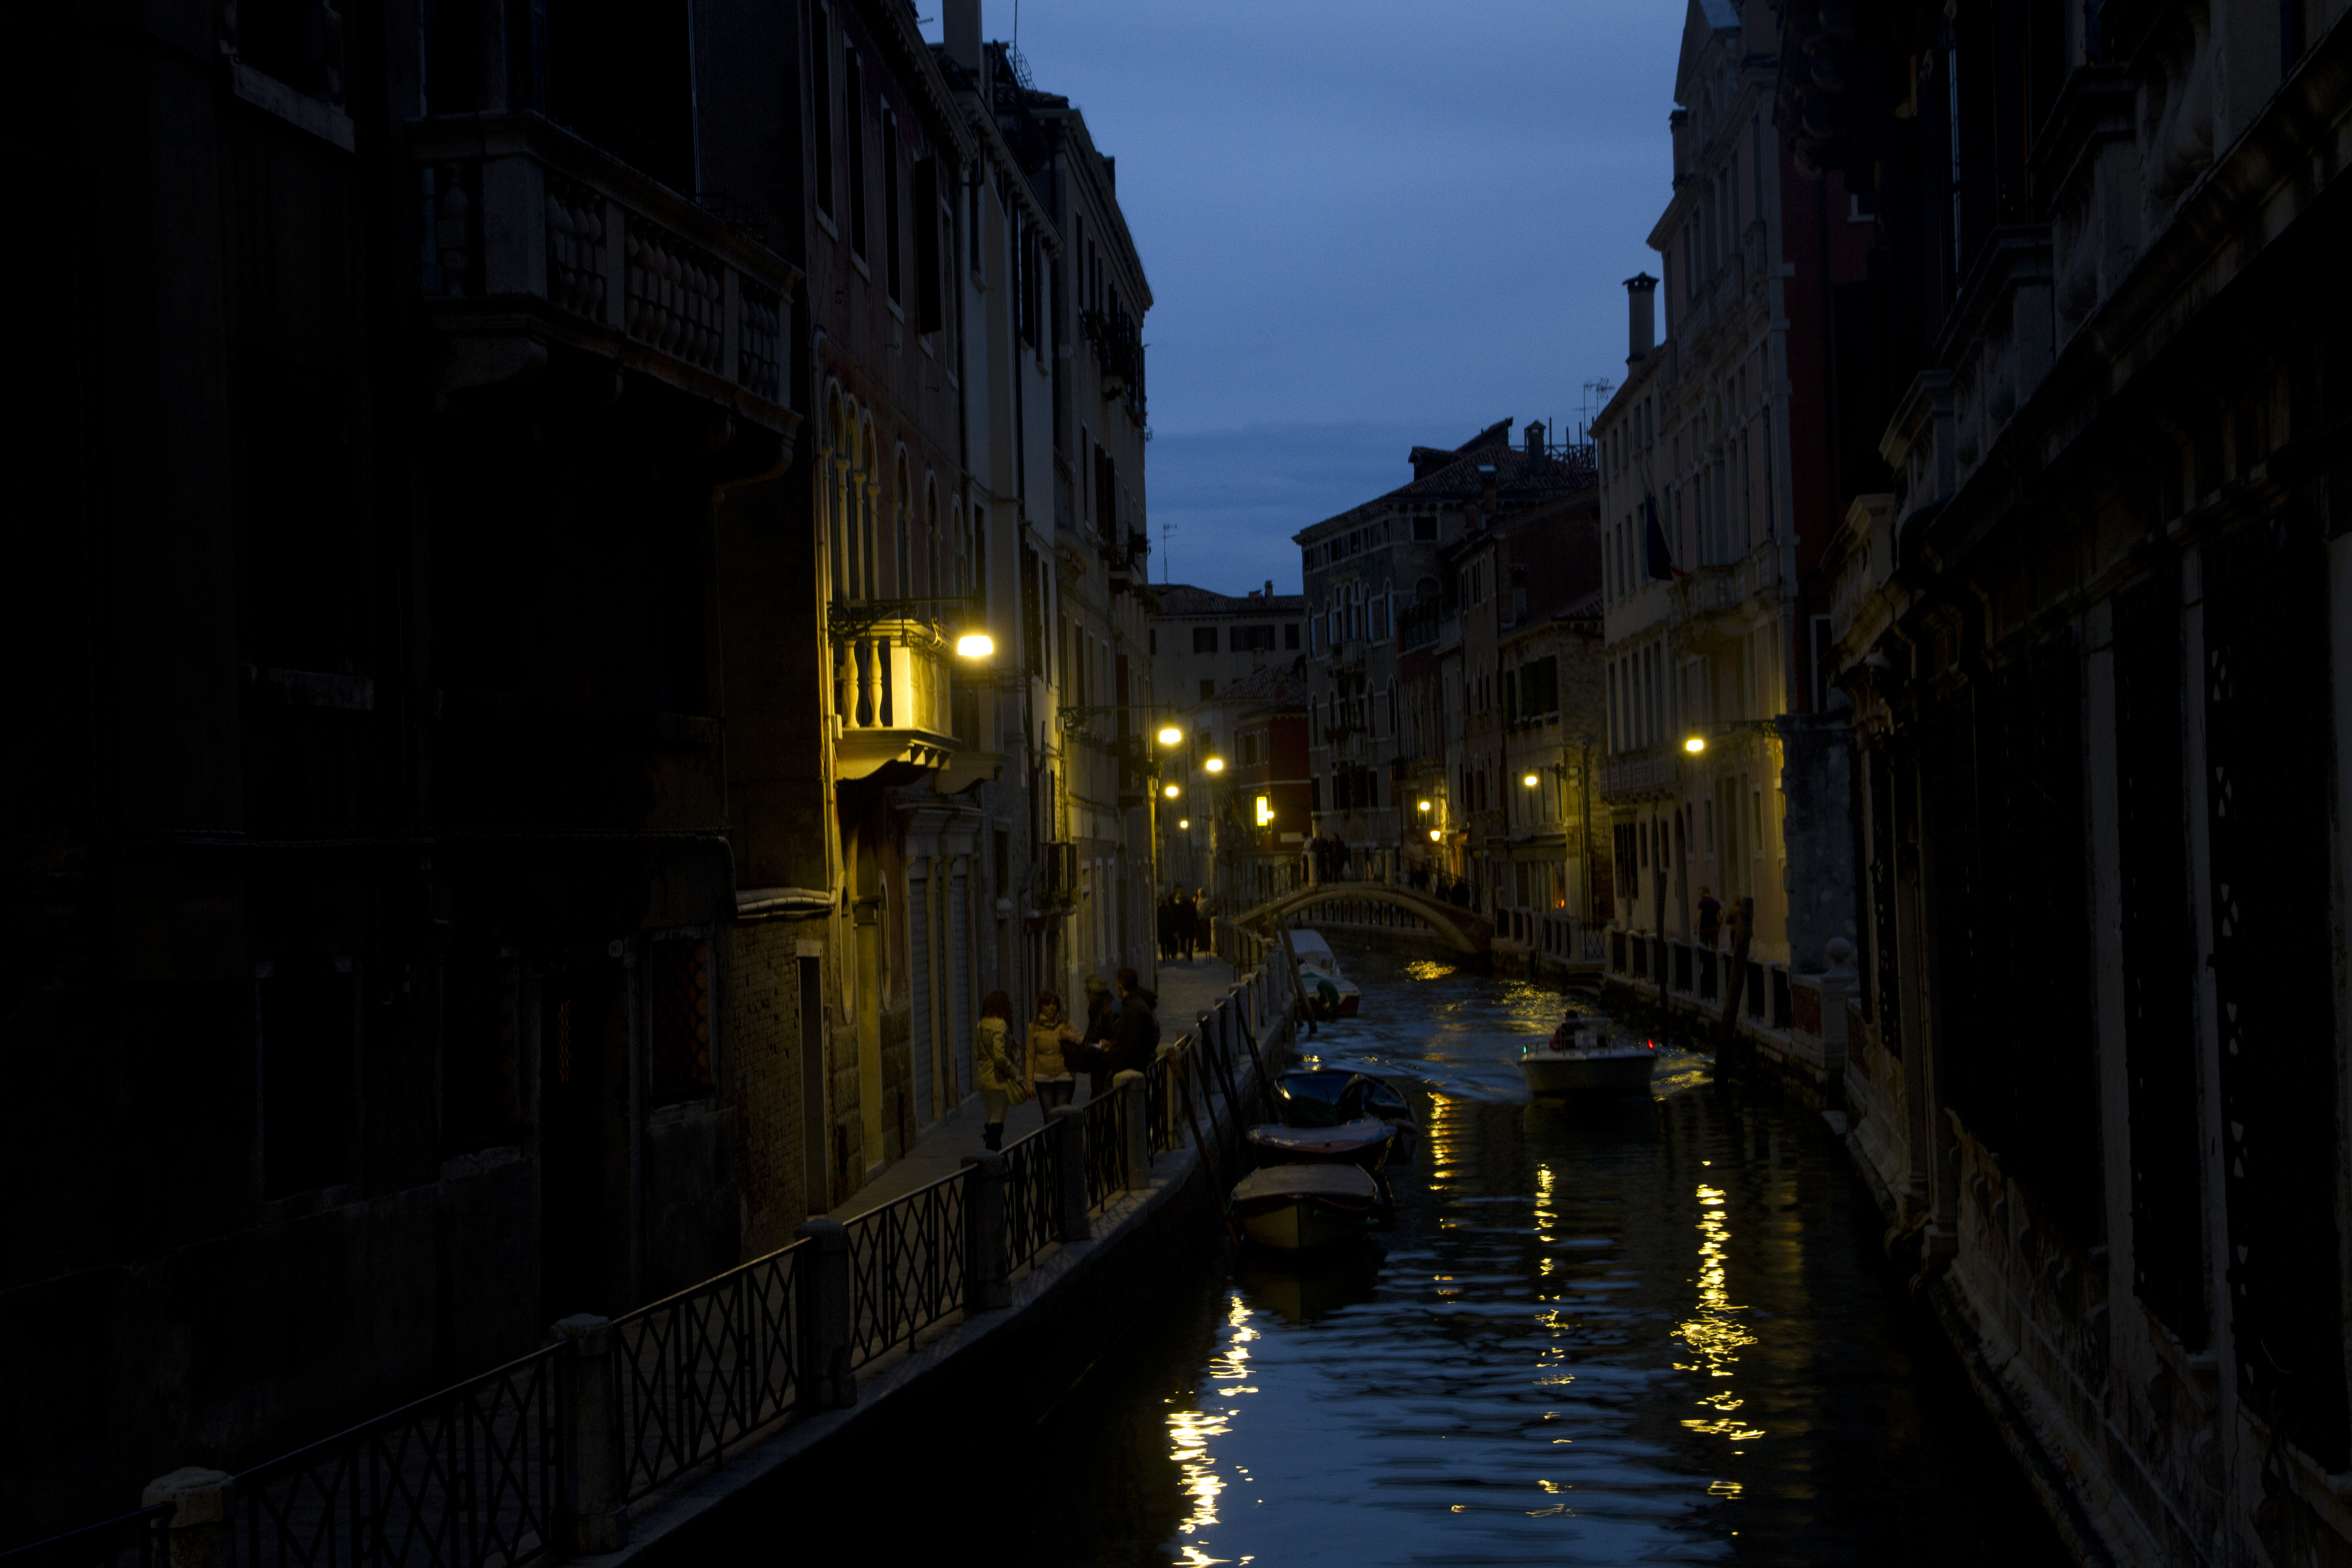 La noche veneciana, hermosa y a la vez misteriosa